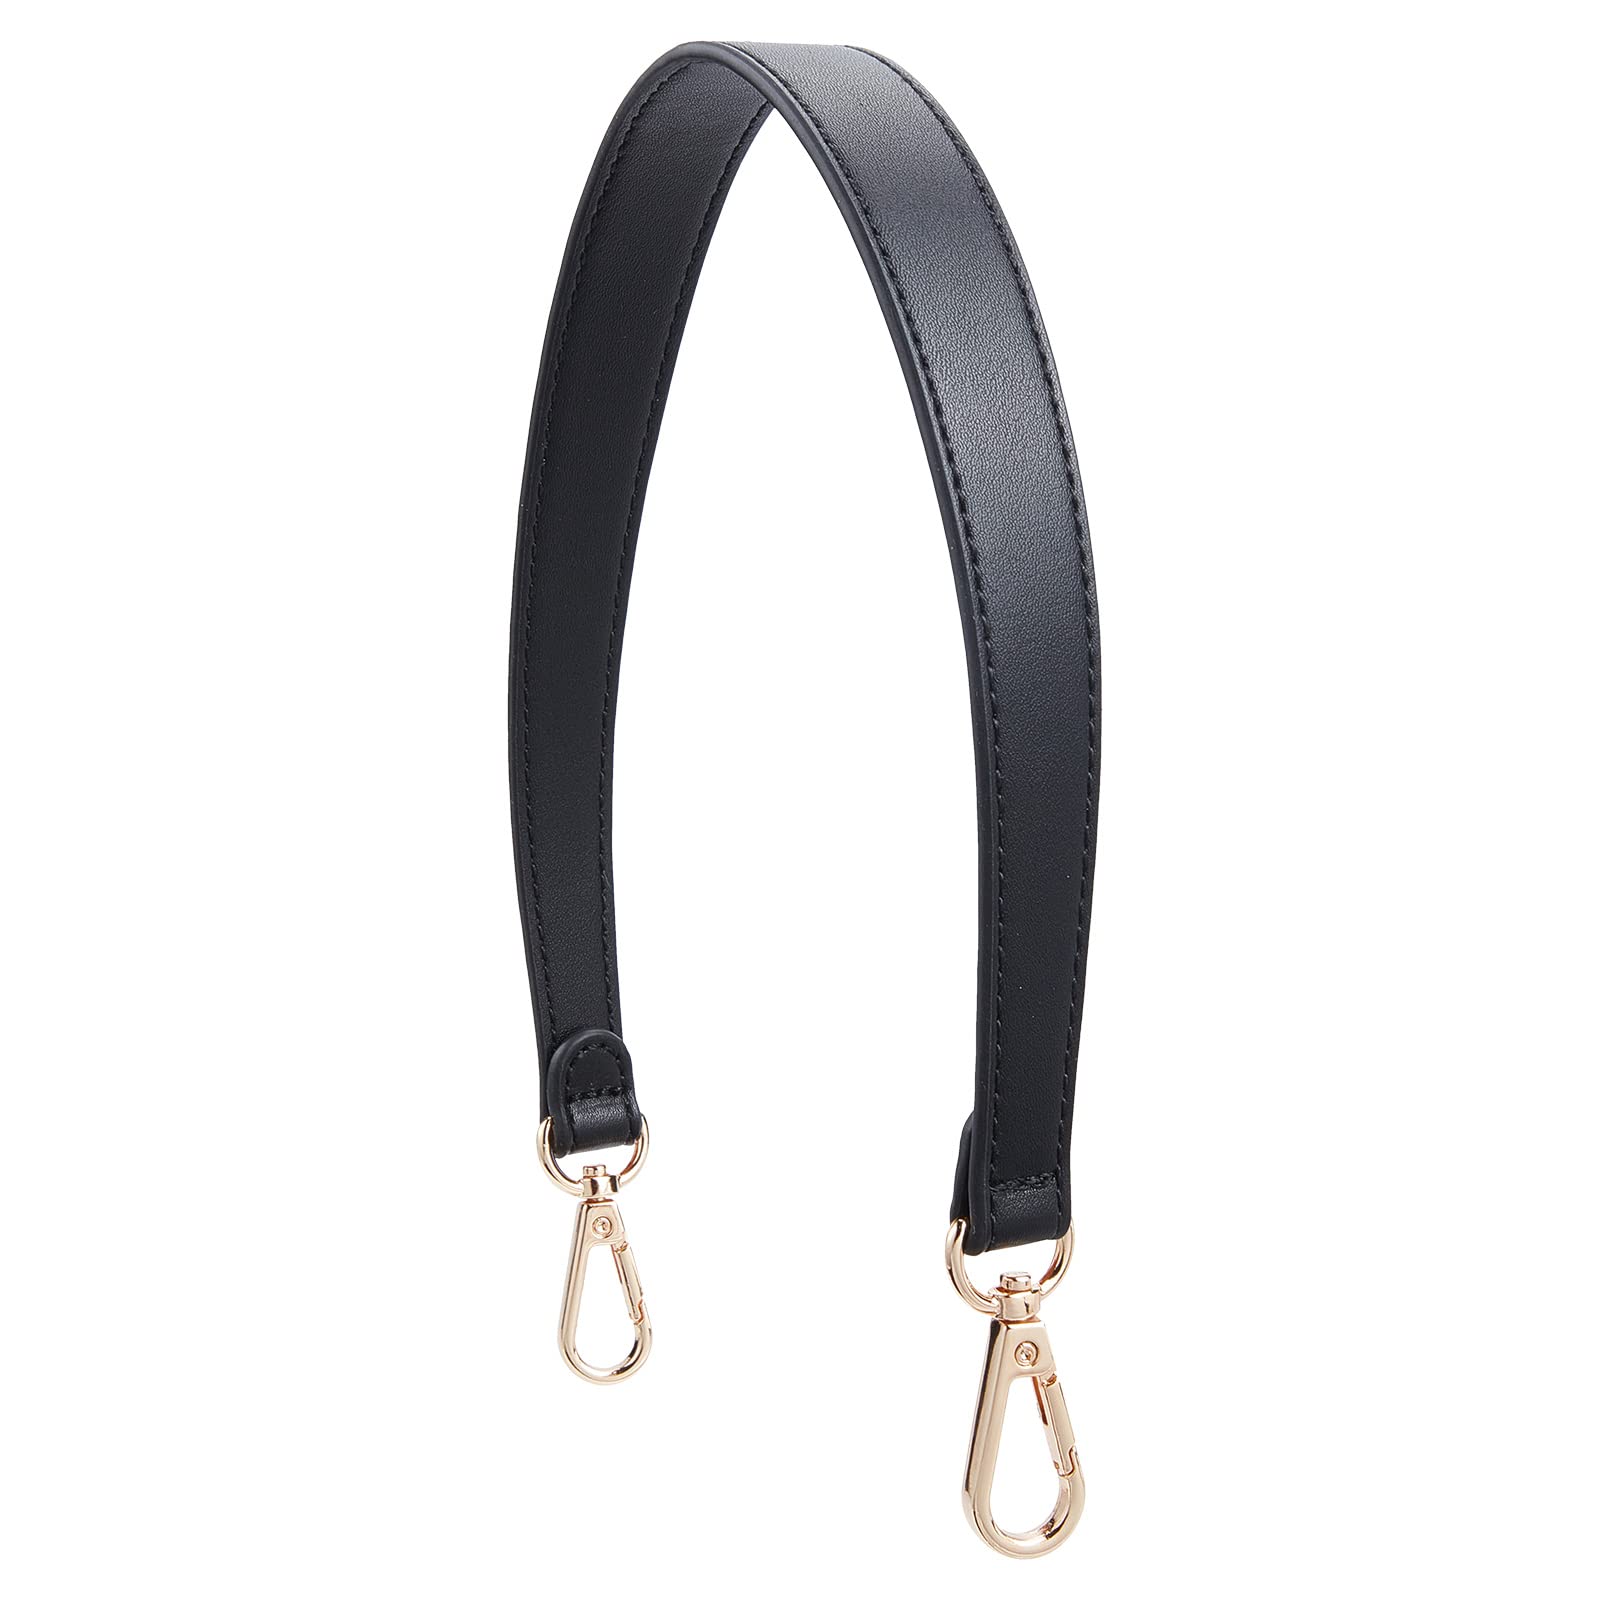 Adjustable Nylon Shoulder Strap For Bags - 130cm Leather Purse Strap  Extender